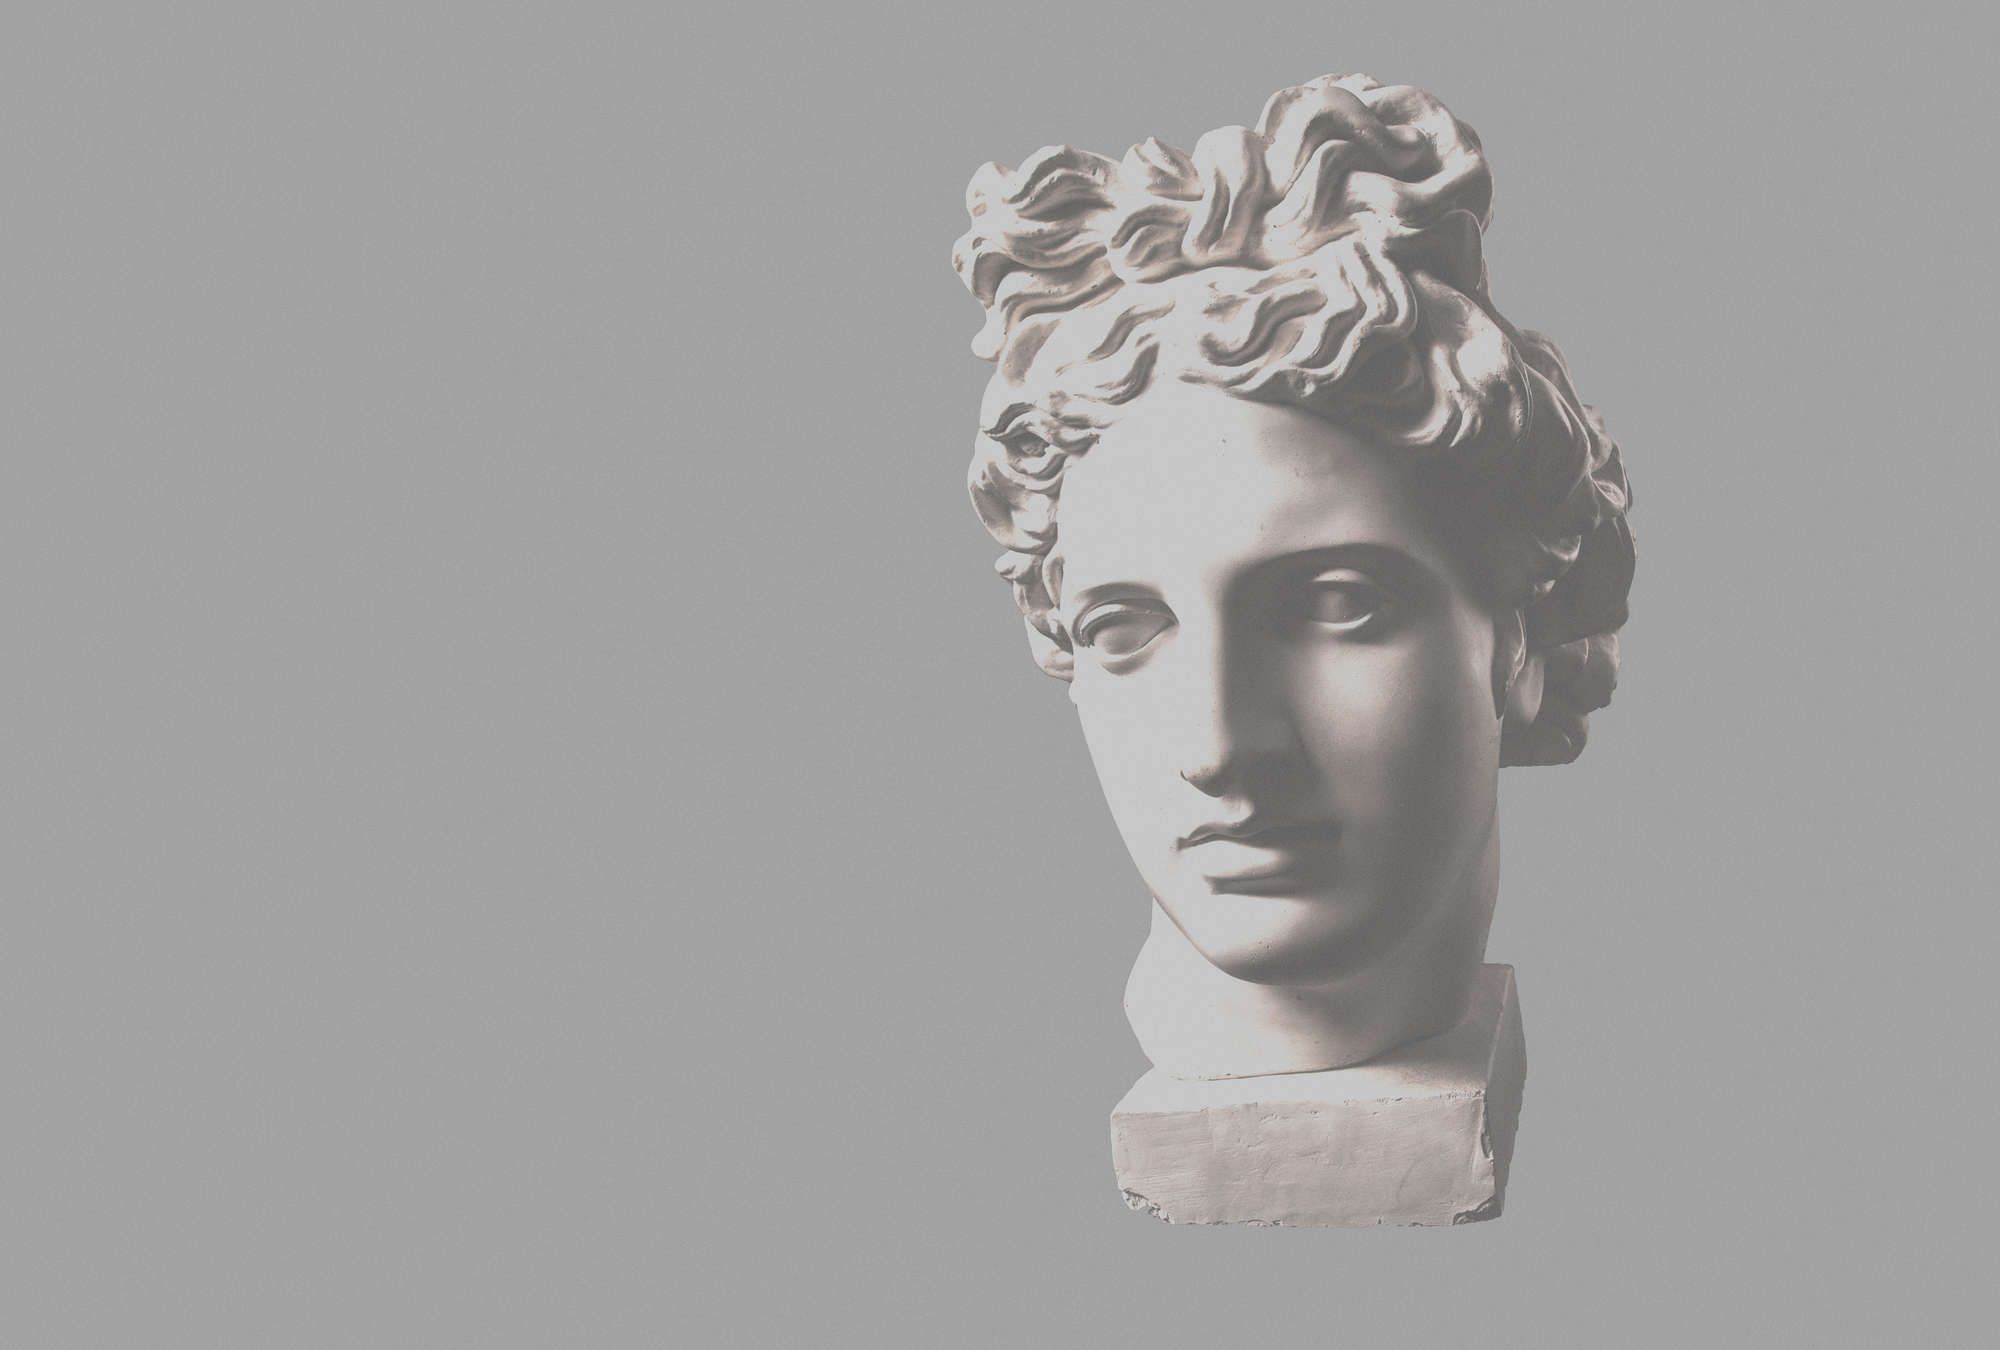             Fotomural »venus« - busto femenino antiguo - Tela no tejida lisa, ligeramente nacarada y brillante
        